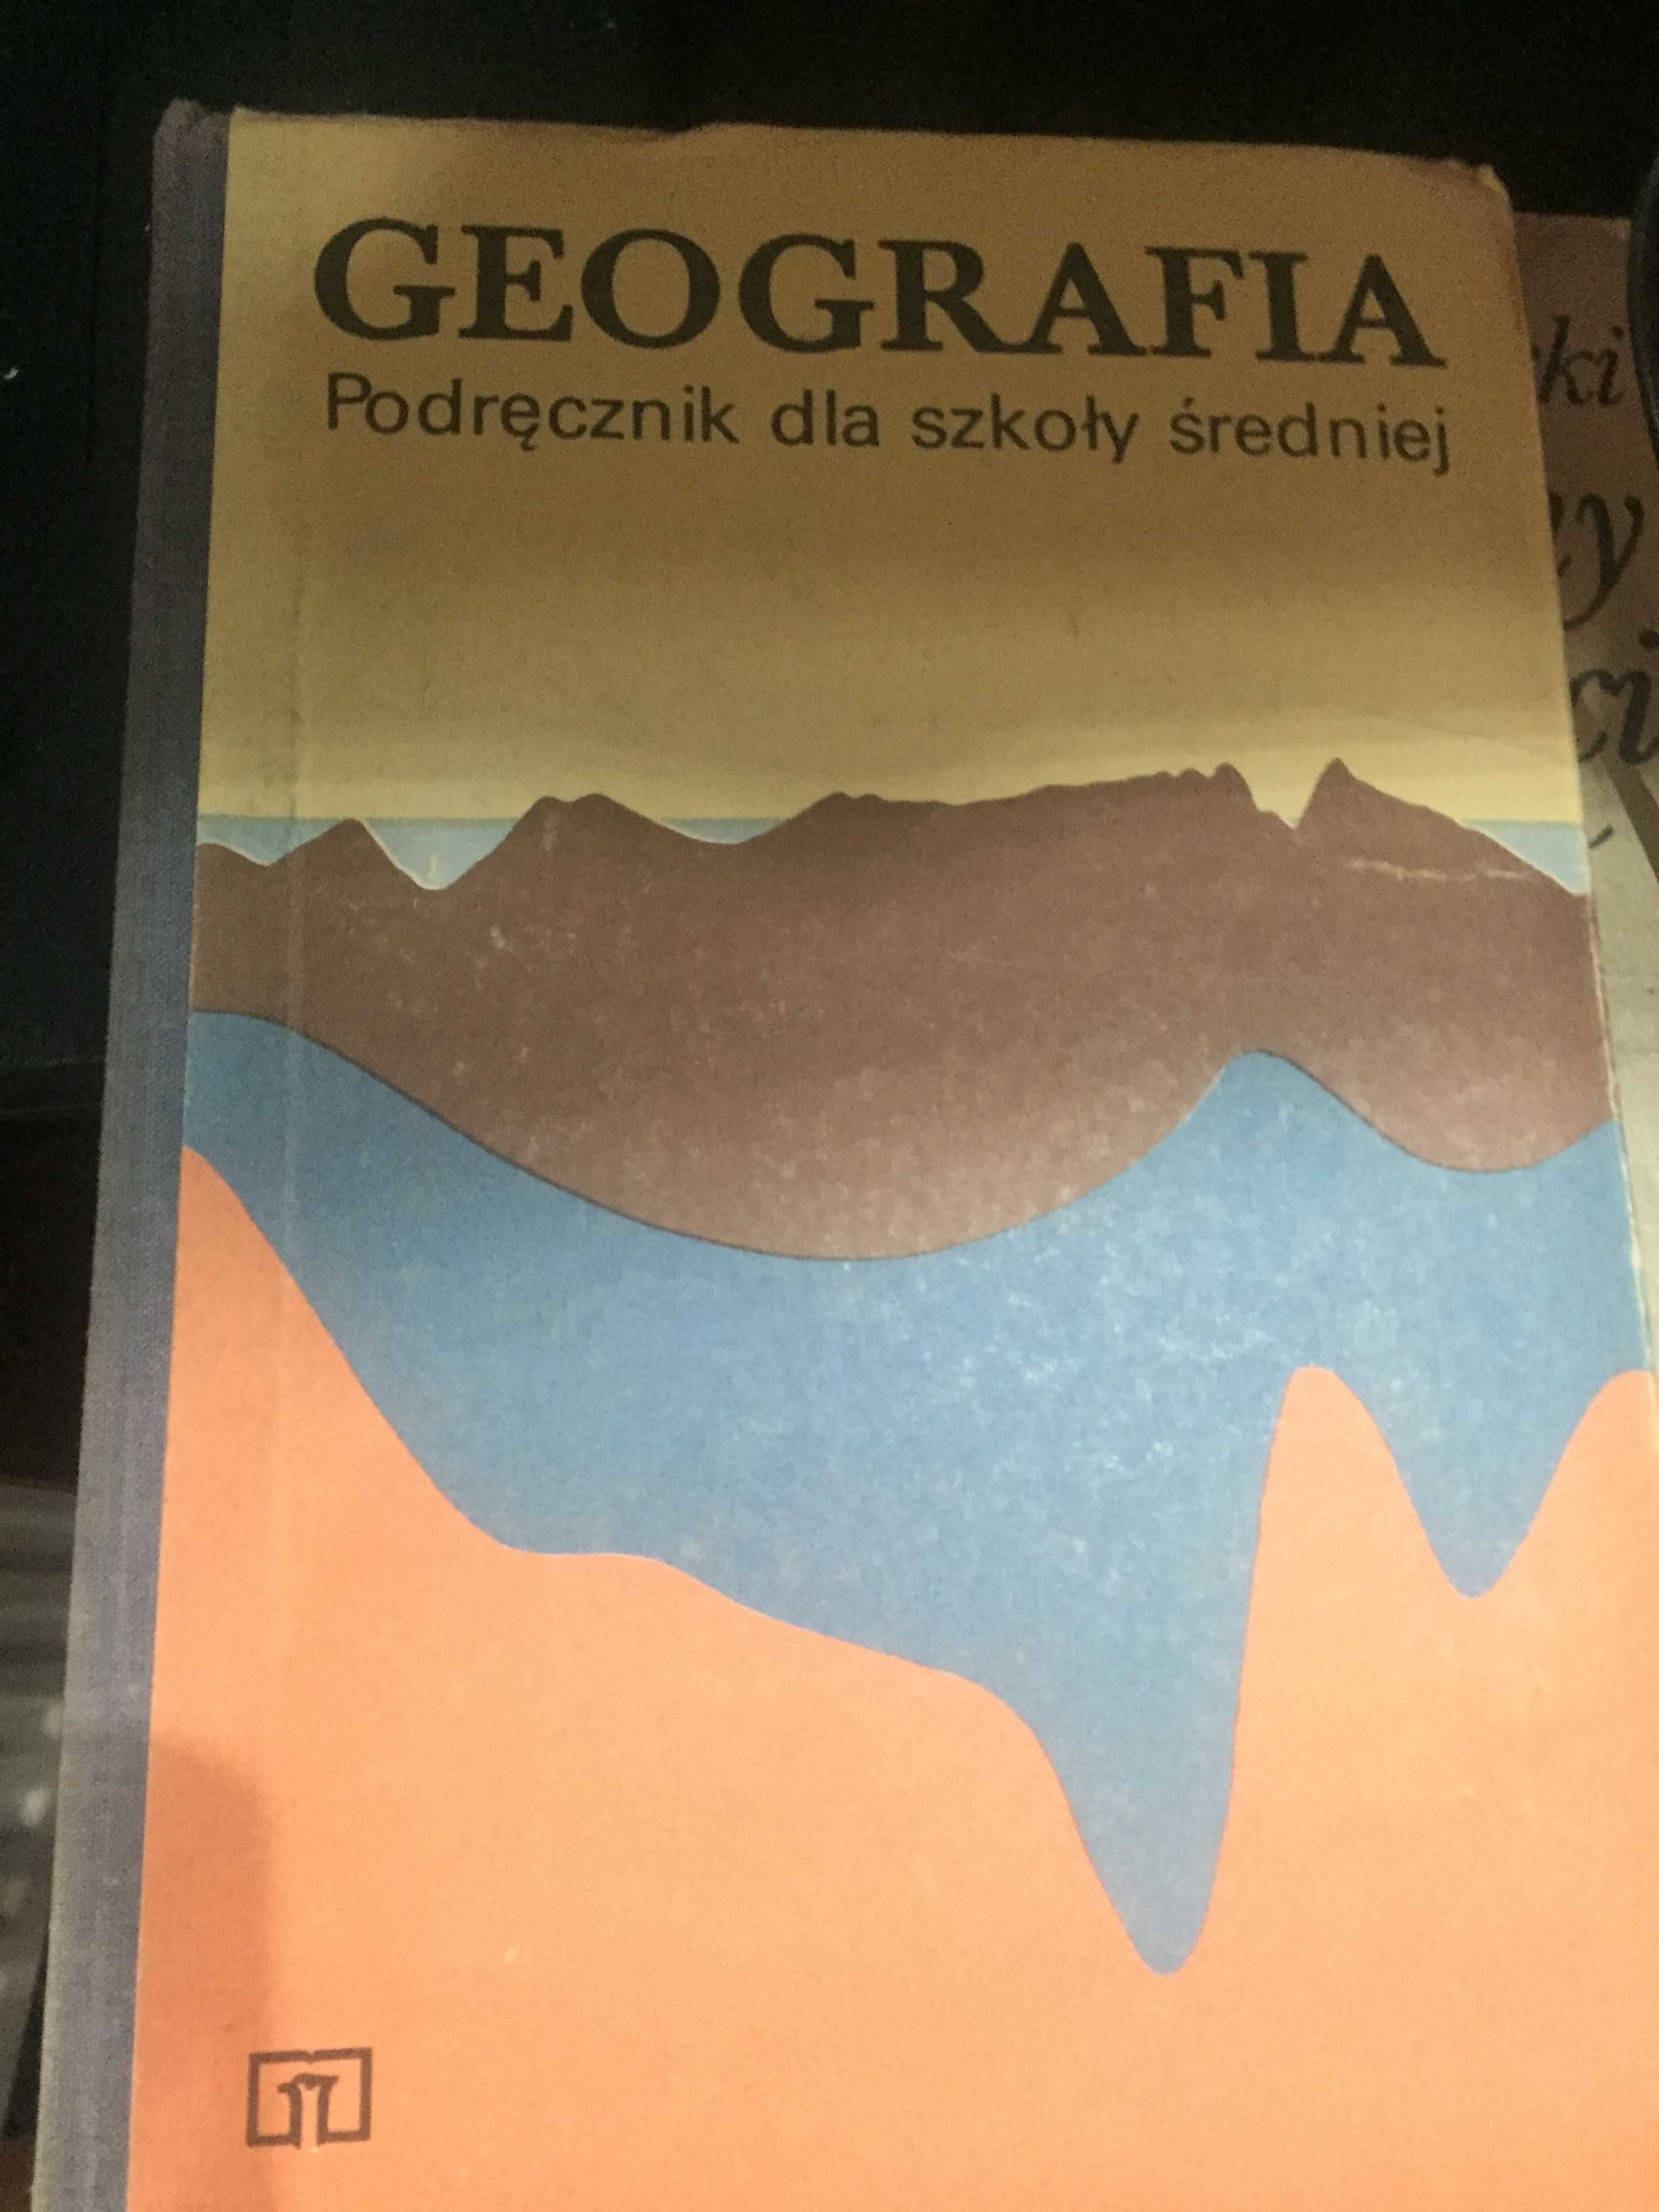 Stary podręcznik Geografia dla szkoły średniej 1988